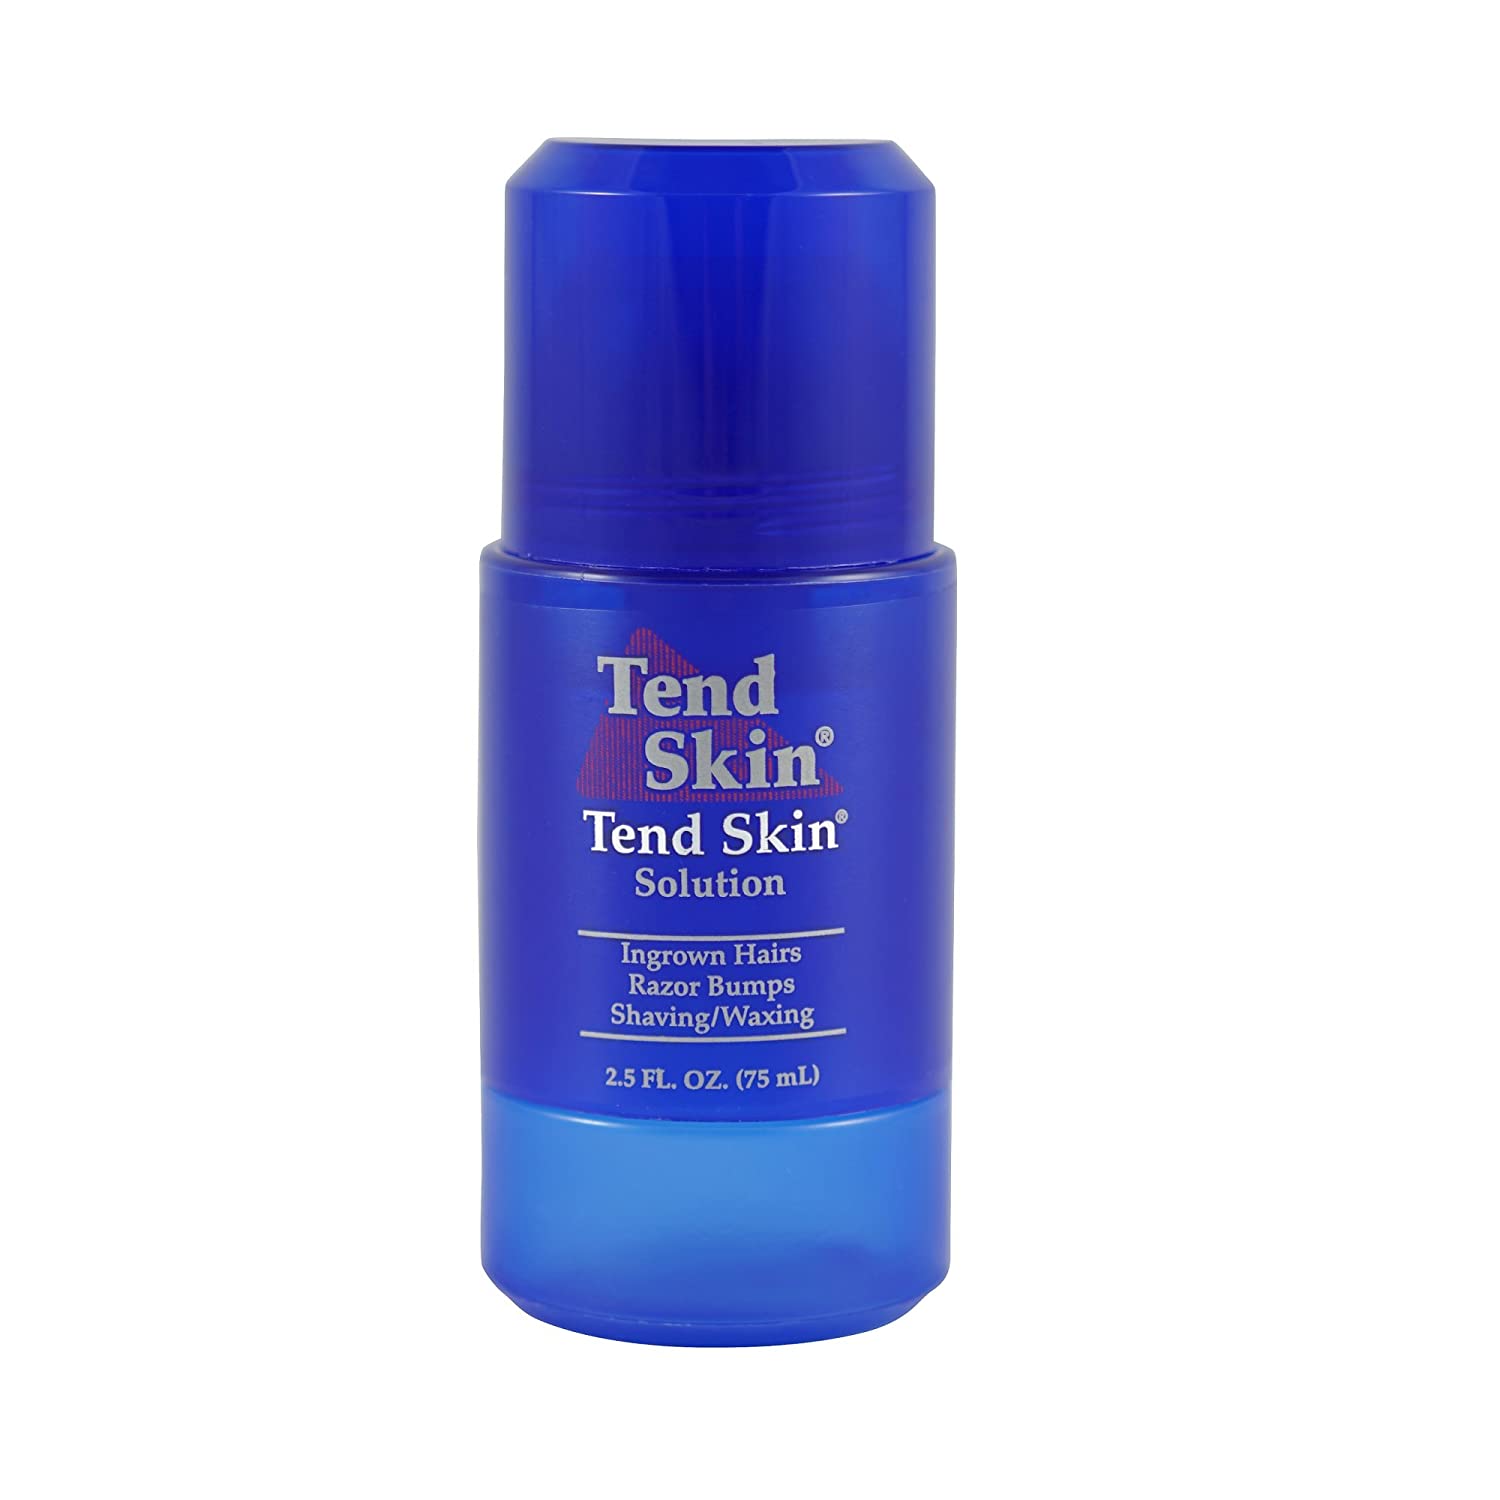 Tend Skin Razor Burn Shaving Kit [Shave Gel + Post Shave +